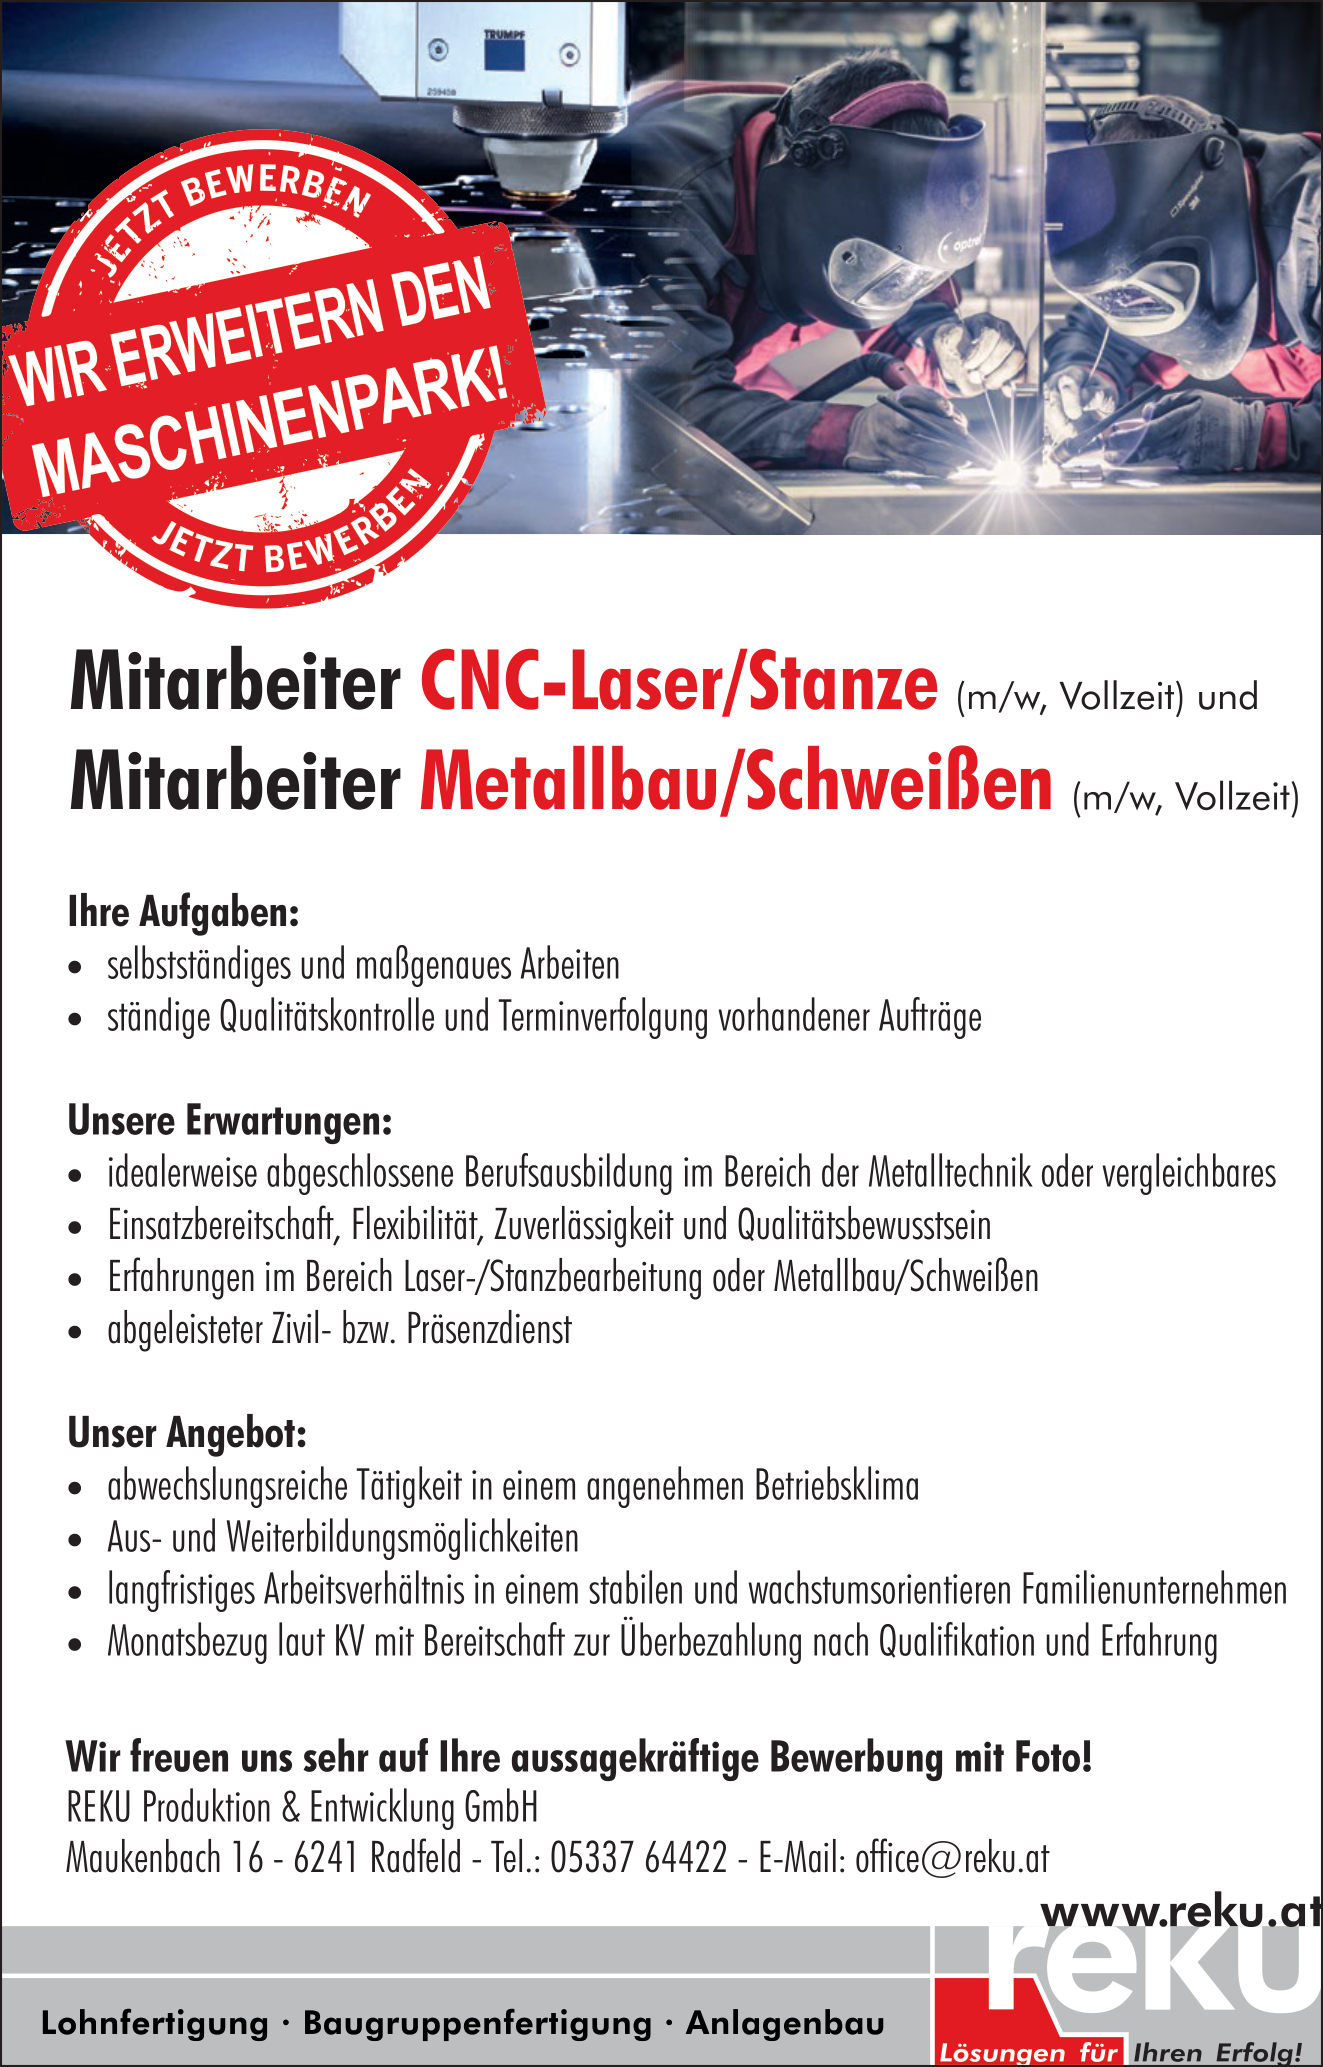 CNC Laser/Stanze und Metallbau/Schweißen Mitarbeiter (m/w)